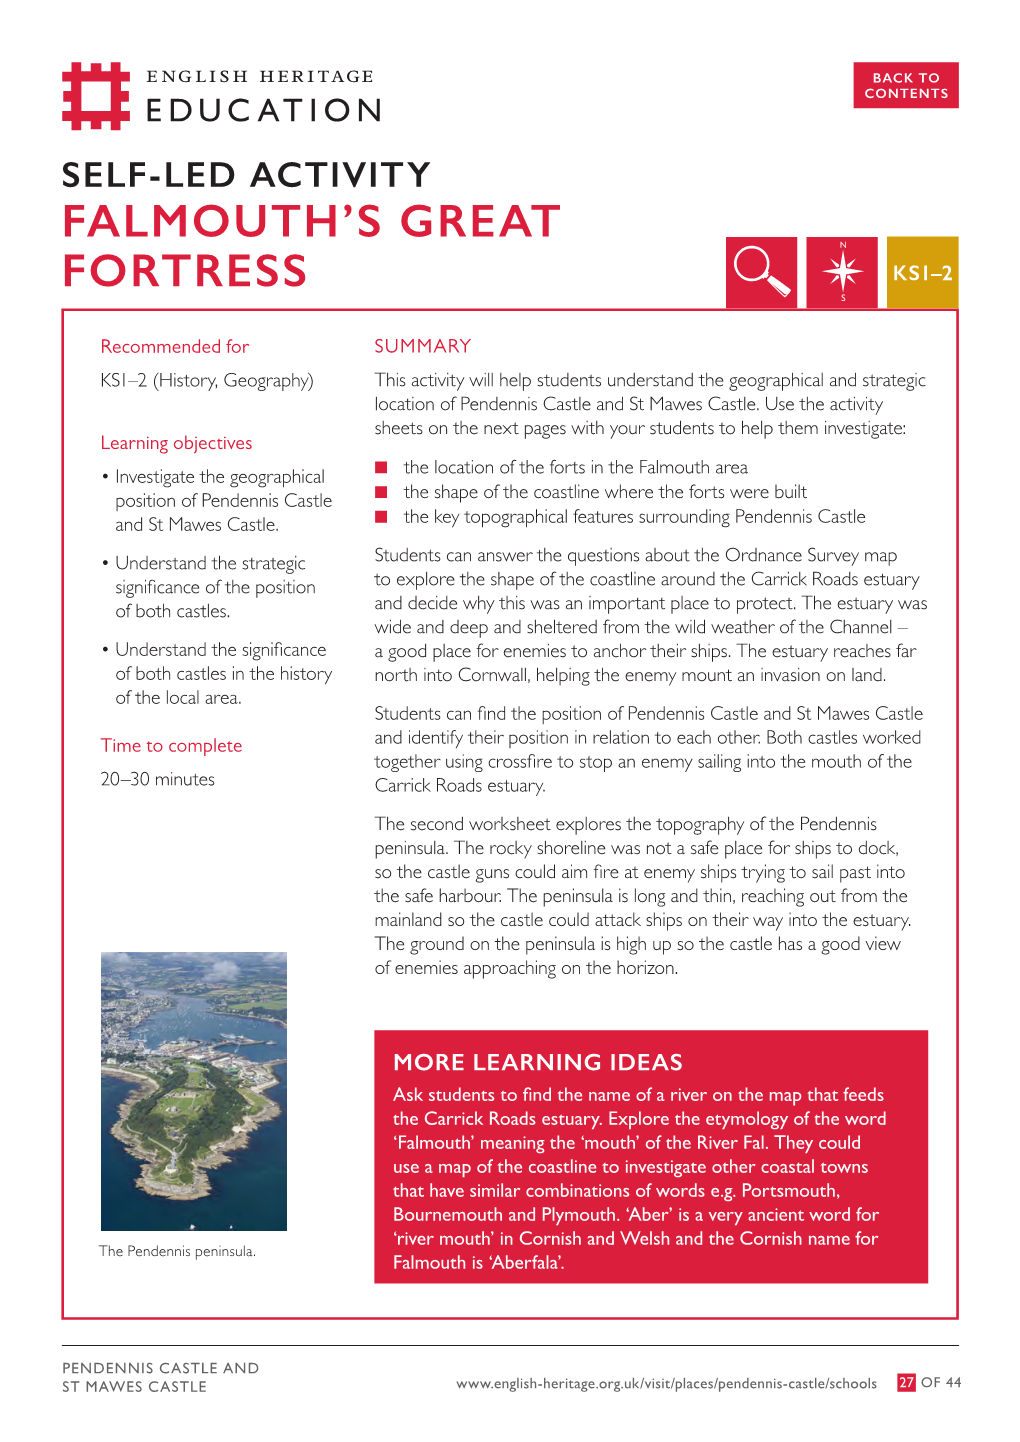 Falmouth's Great Fortress (KS1-KS2)